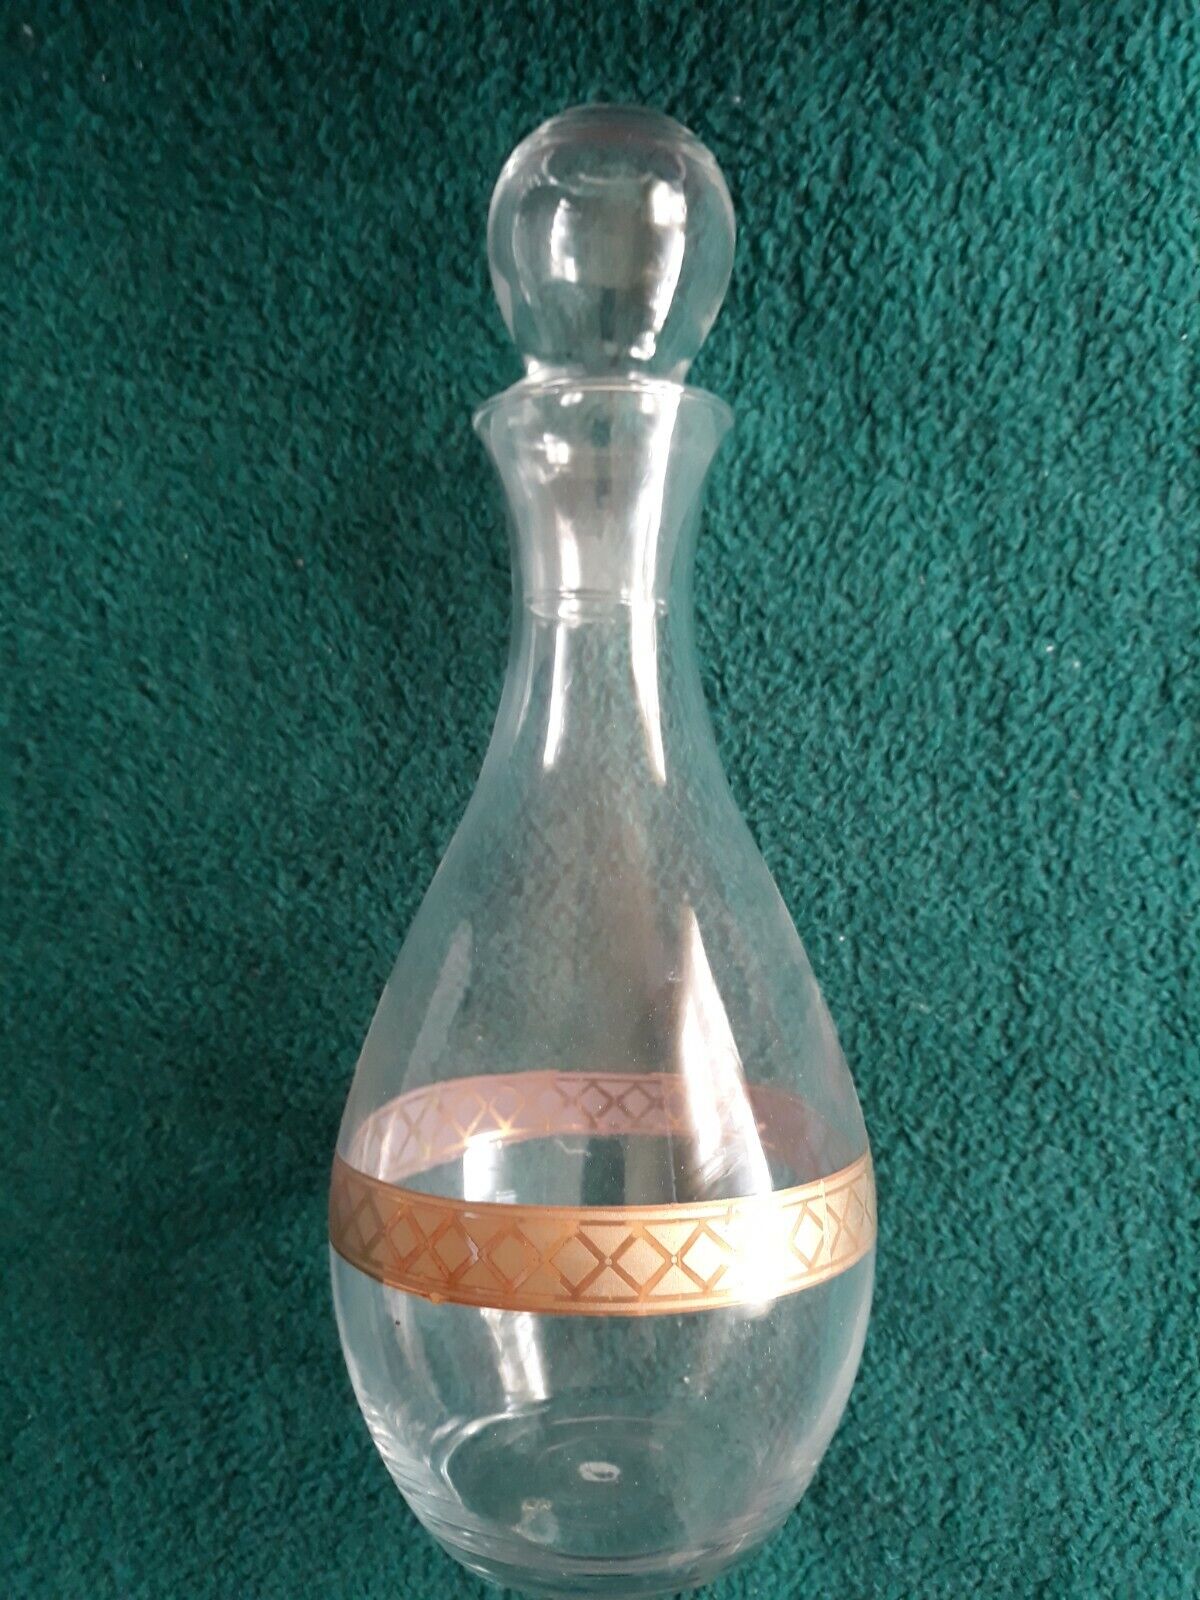 7-pc Le Gioie Wine Set Crystal Glass Decanter Gold Rim Italy Le Gioie - фотография #7